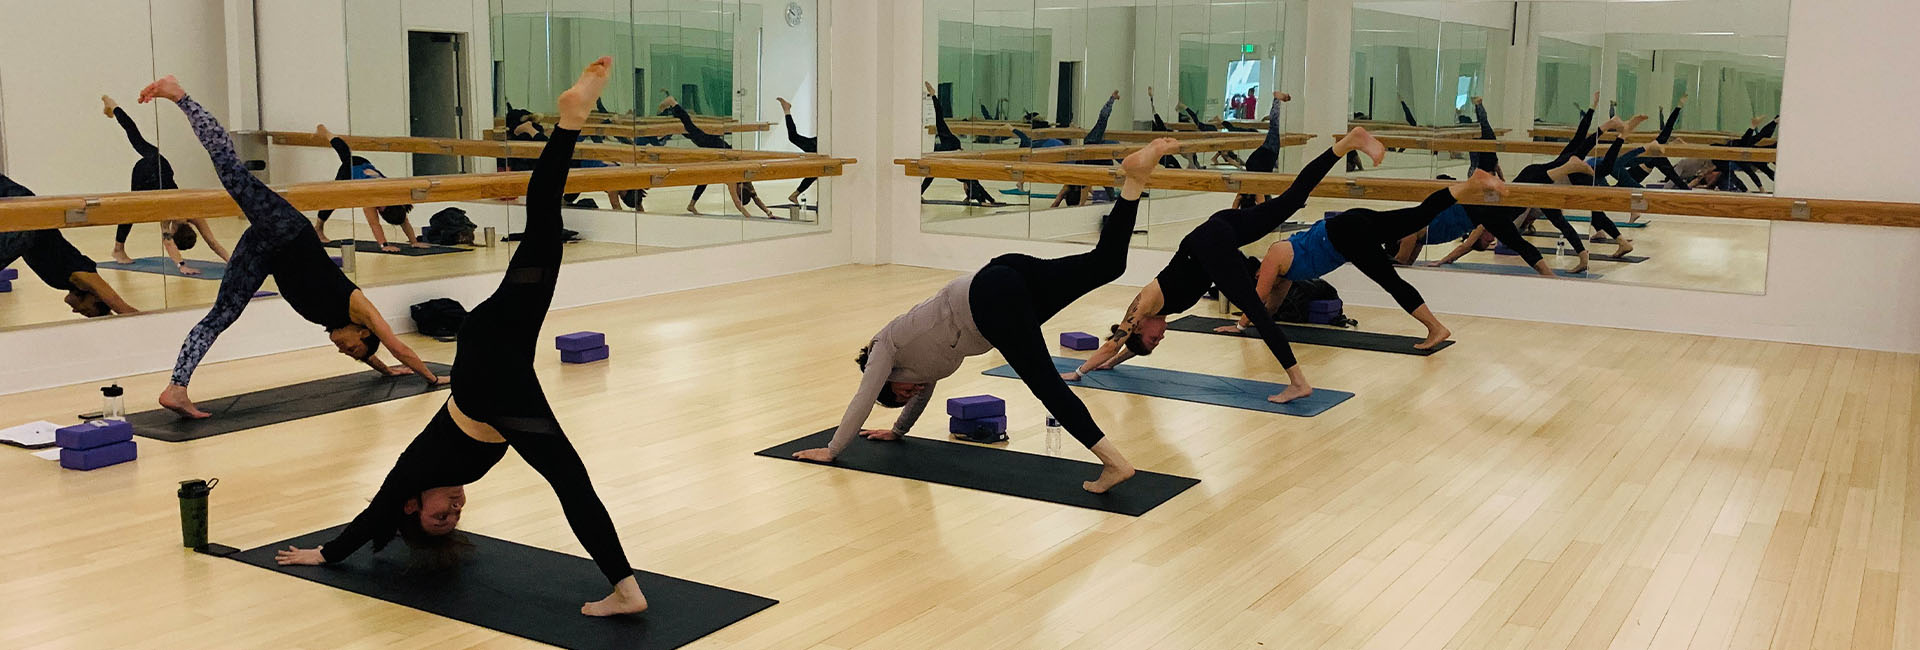 group pilates yoga glass